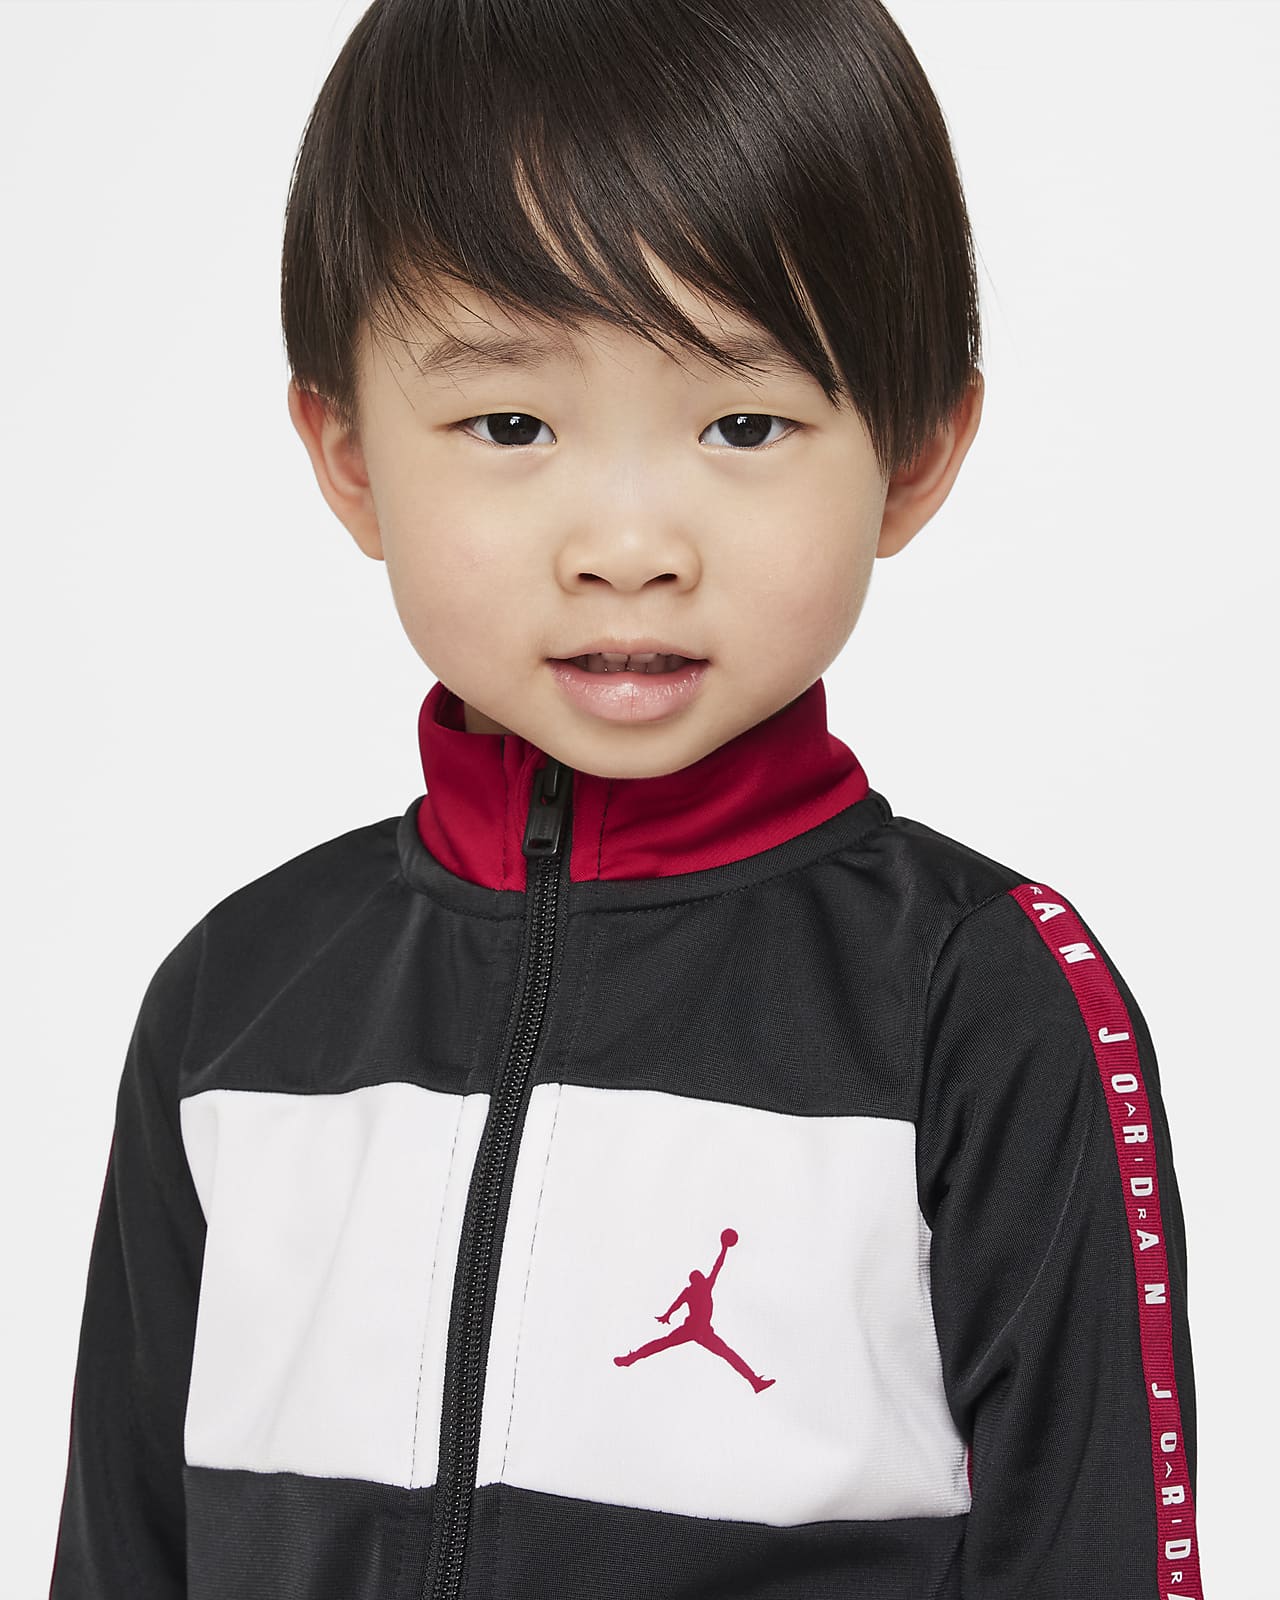 Jordan Baby (0-9M) Full-Zip Coverall. Nike.com